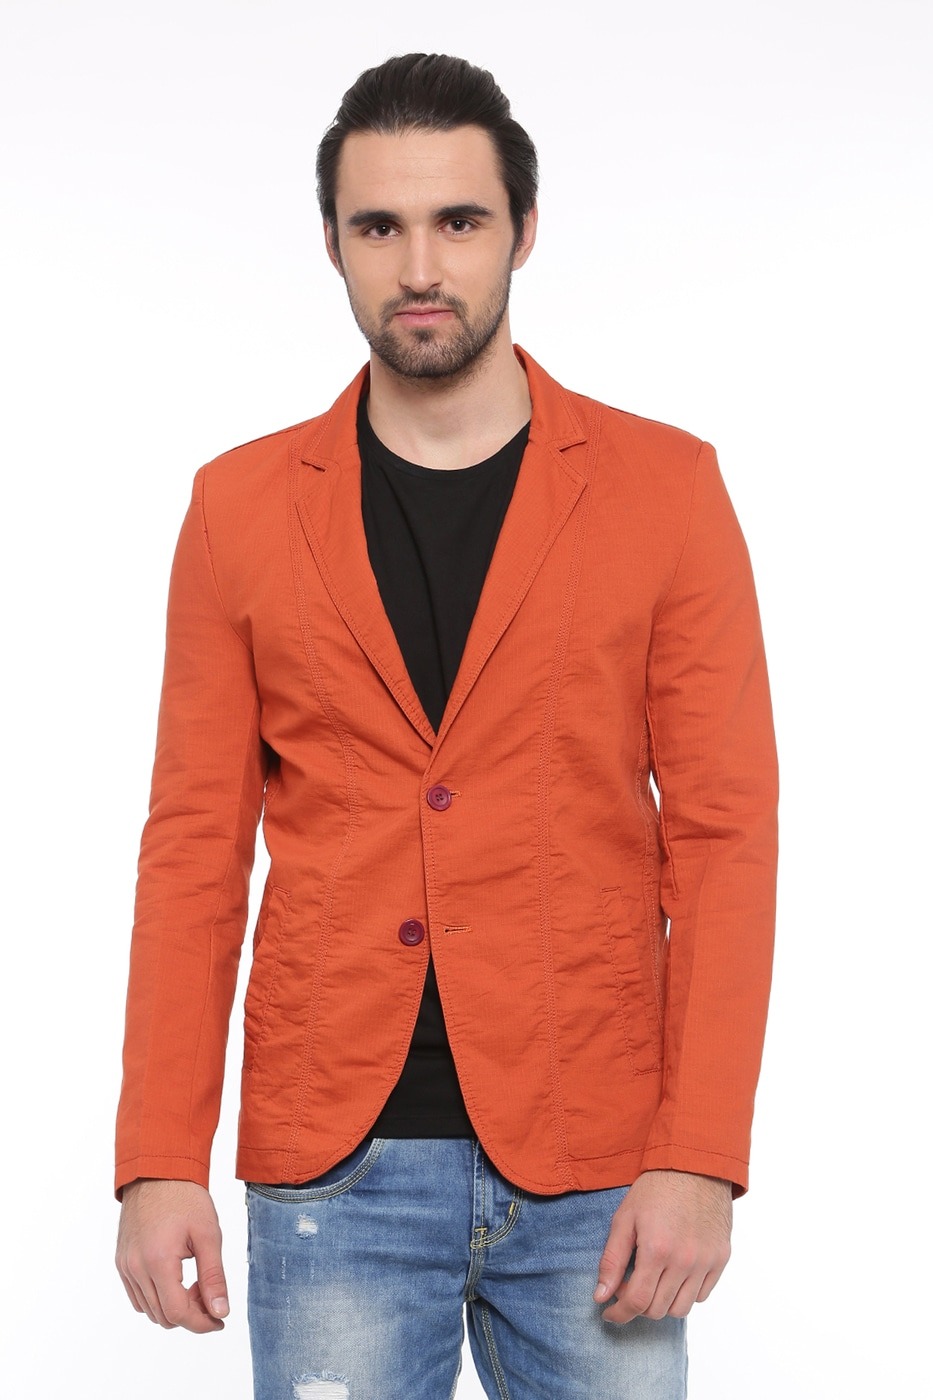 The Orange Blazer Is A Great Fashion Statement